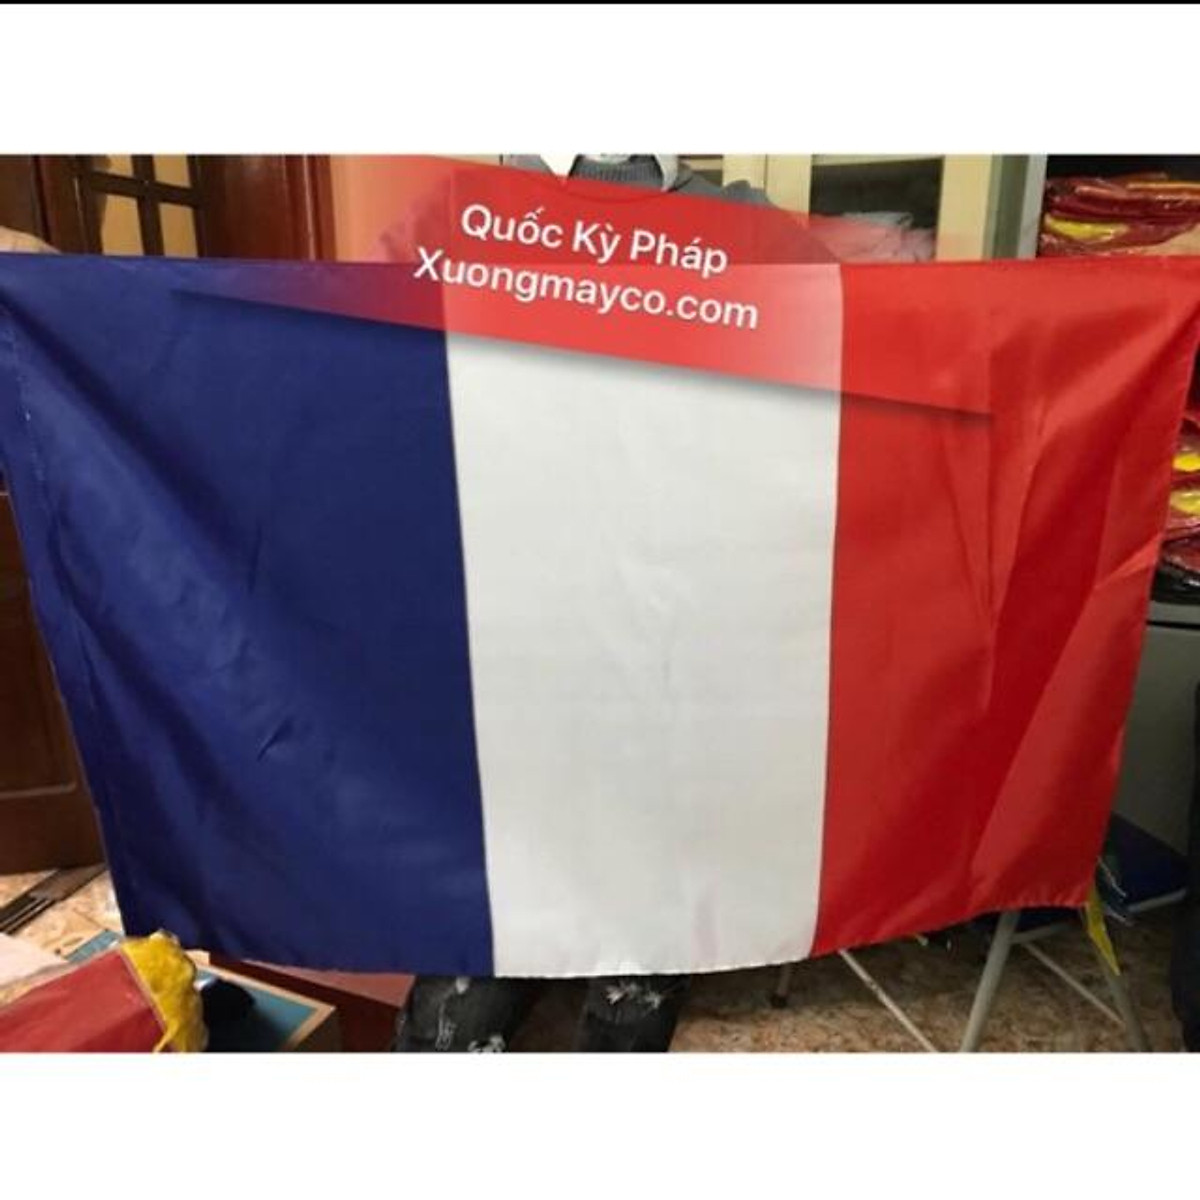 Mua cờ quốc kỳ pháp là một cách để thể hiện tình yêu và lòng tự hào với đất nước Pháp. Với nhiều loại cờ được bán trên thị trường, bạn có thể tìm thấy một chiếc cờ phù hợp với ngân sách và mục đích của mình. Hãy xem hình ảnh liên quan đến cờ quốc kỳ pháp để cảm nhận được vẻ đẹp và ý nghĩa của nó.